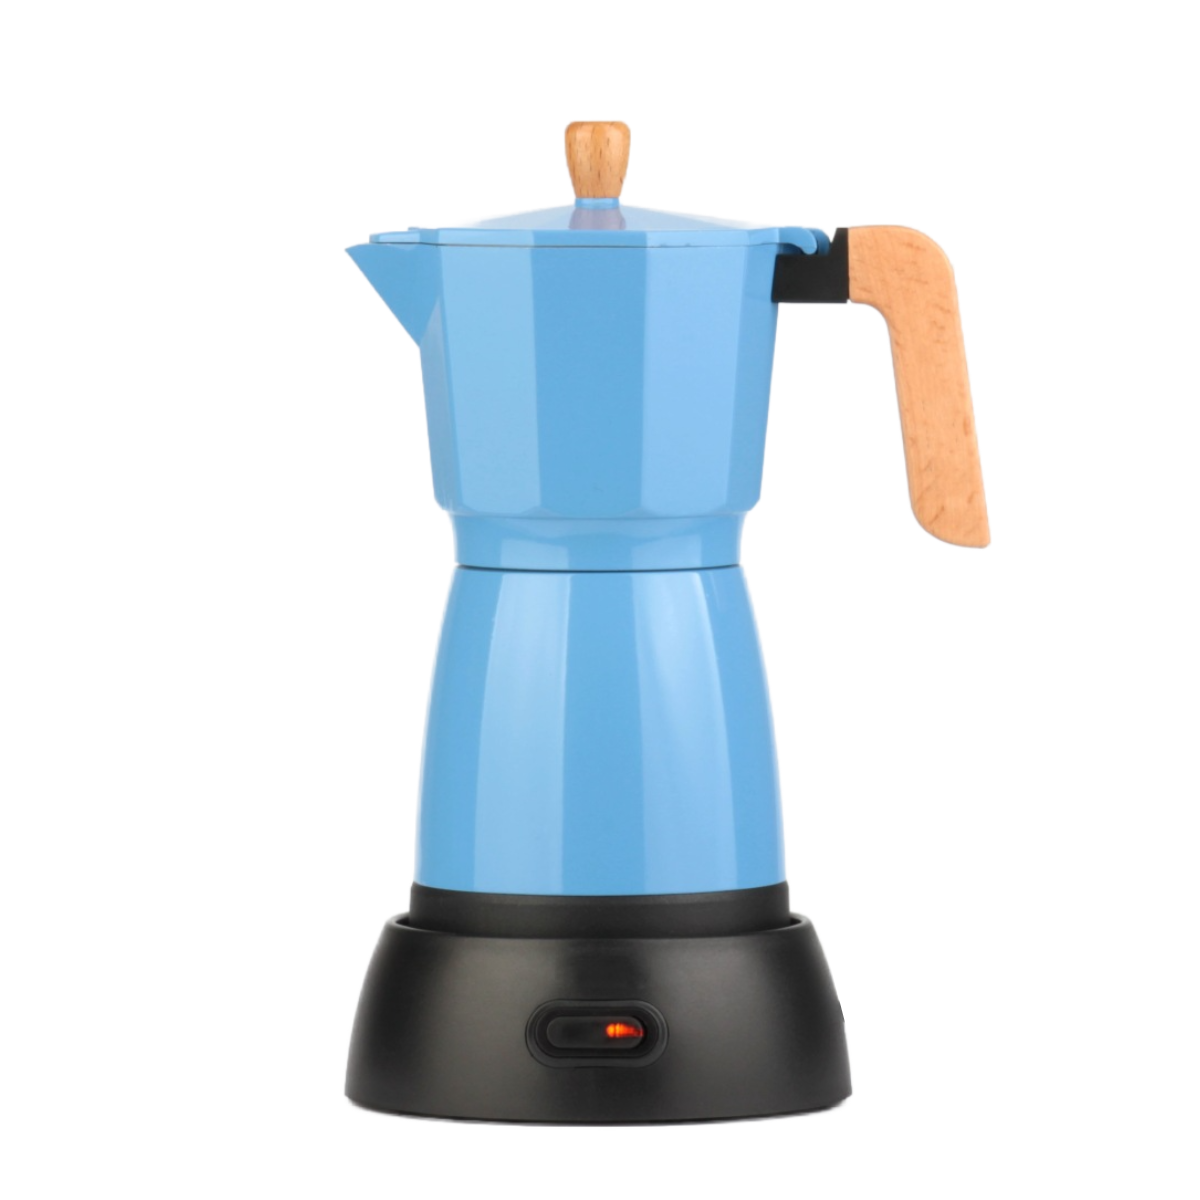 zu Wood Maker reinigen Kaffeetasse Kaltextraktion : leicht Coffee Mocha Blue UWOT Destillationsdruck, Grain Blau unter